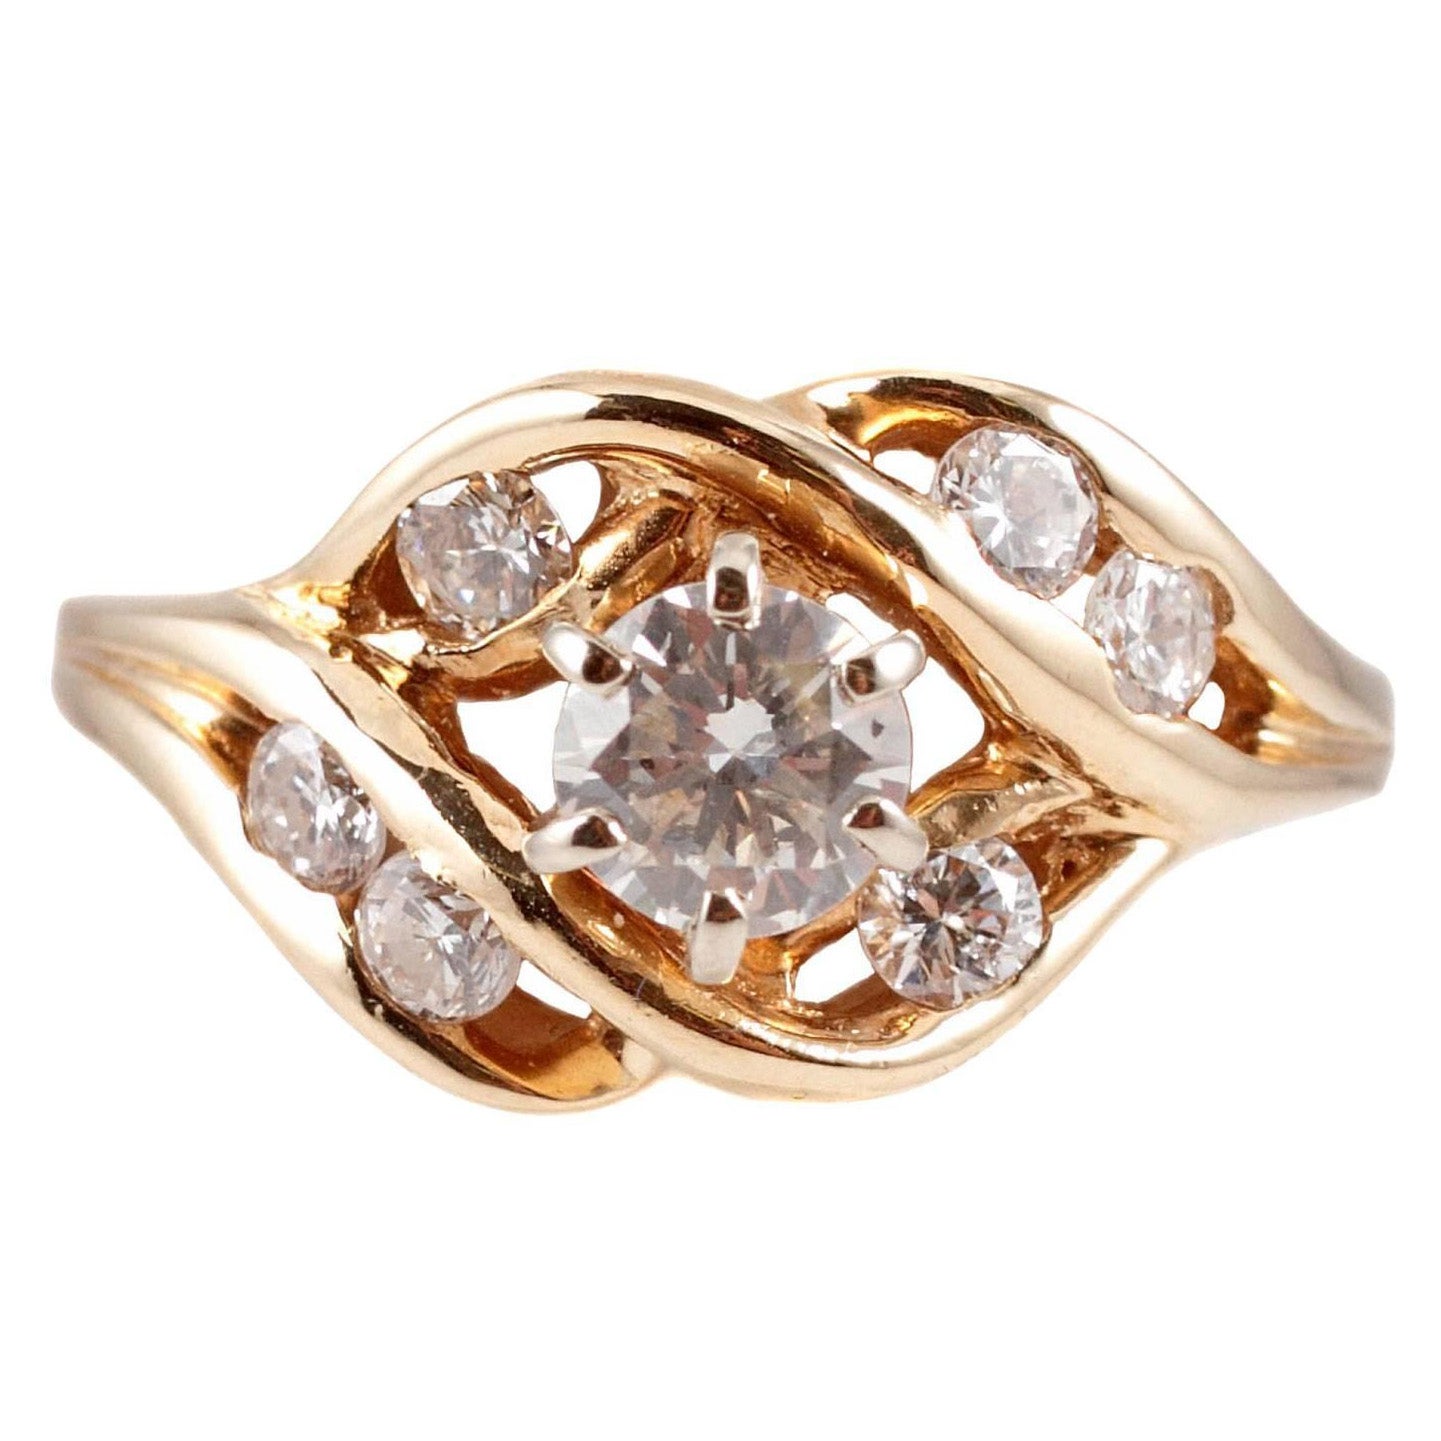 1.00 Carat Diamond Ring in 14 Karat Yellow Gold For Sale